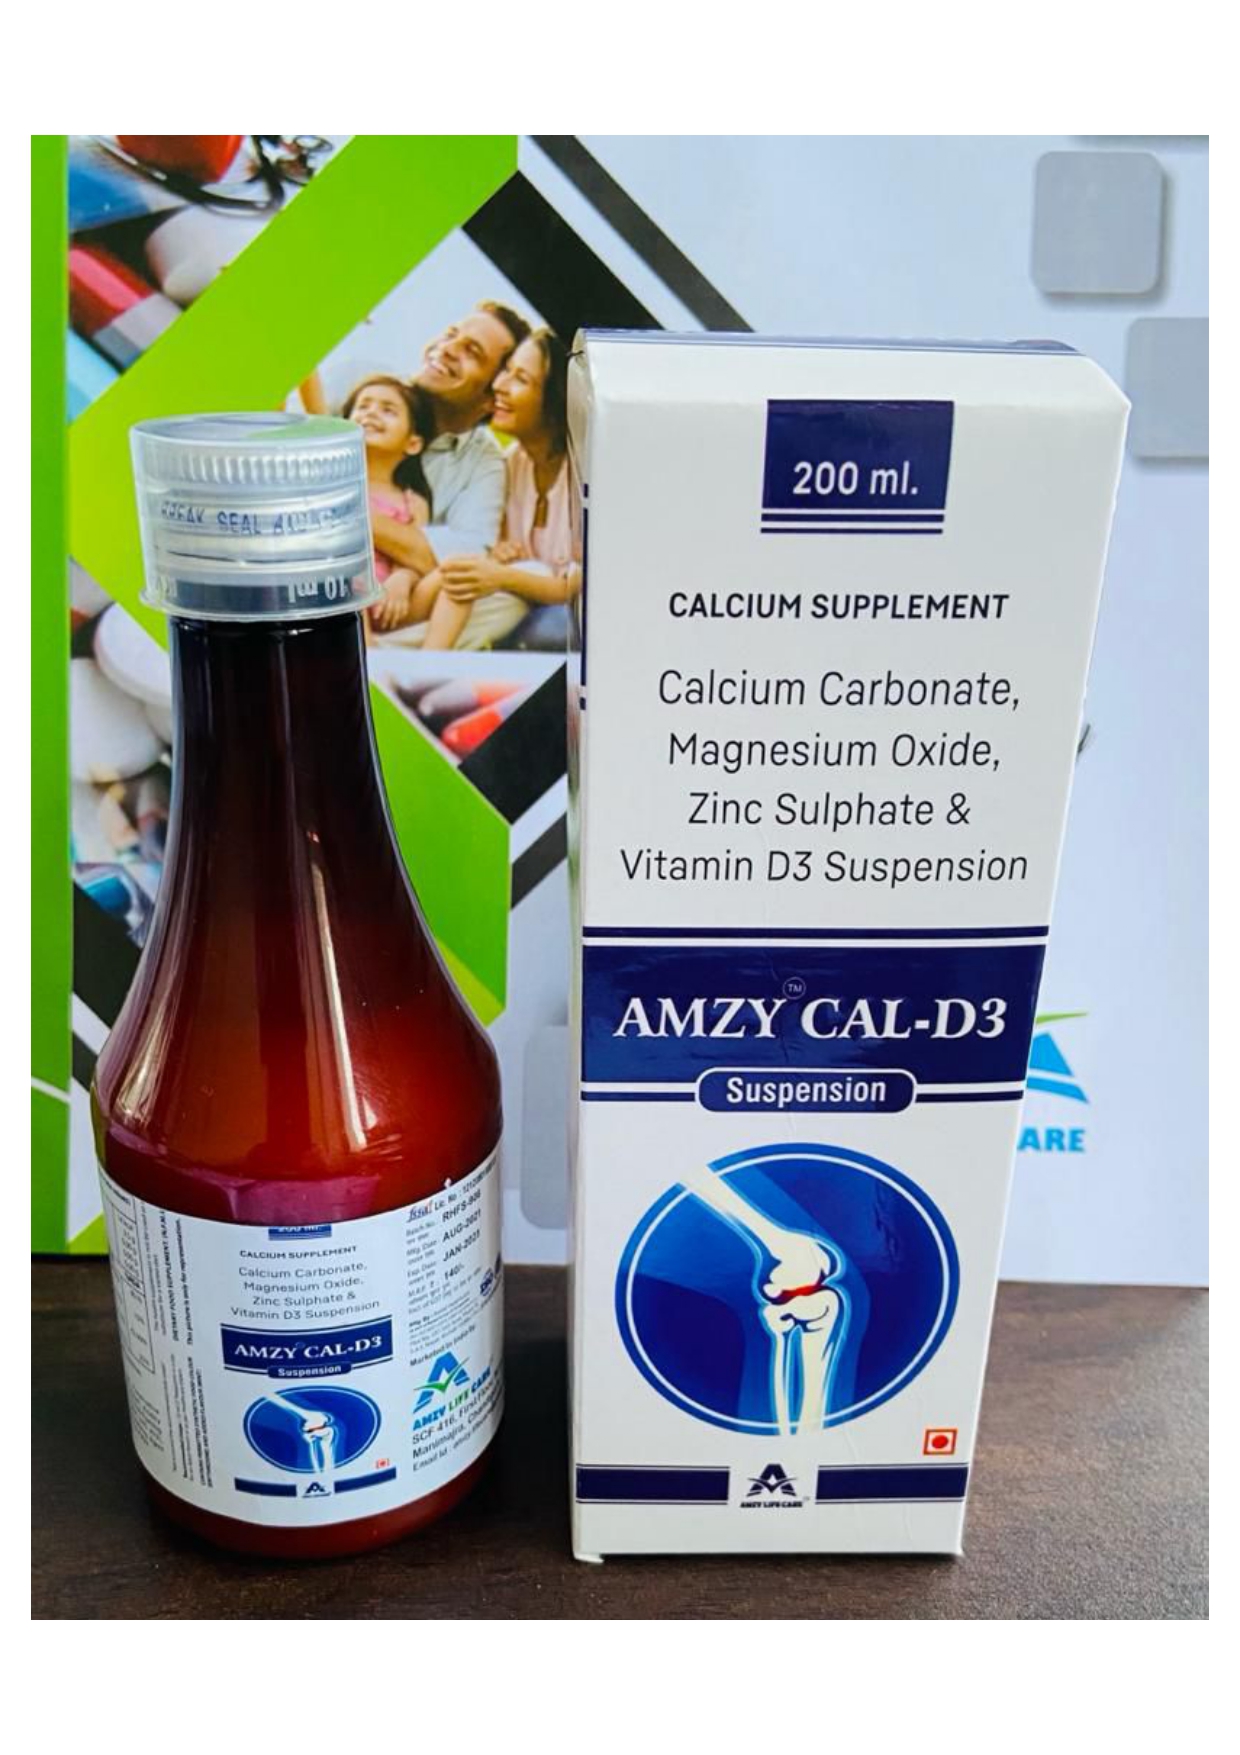 calcium carbonate + vitamin d3
+ magnesium + zinc suspension